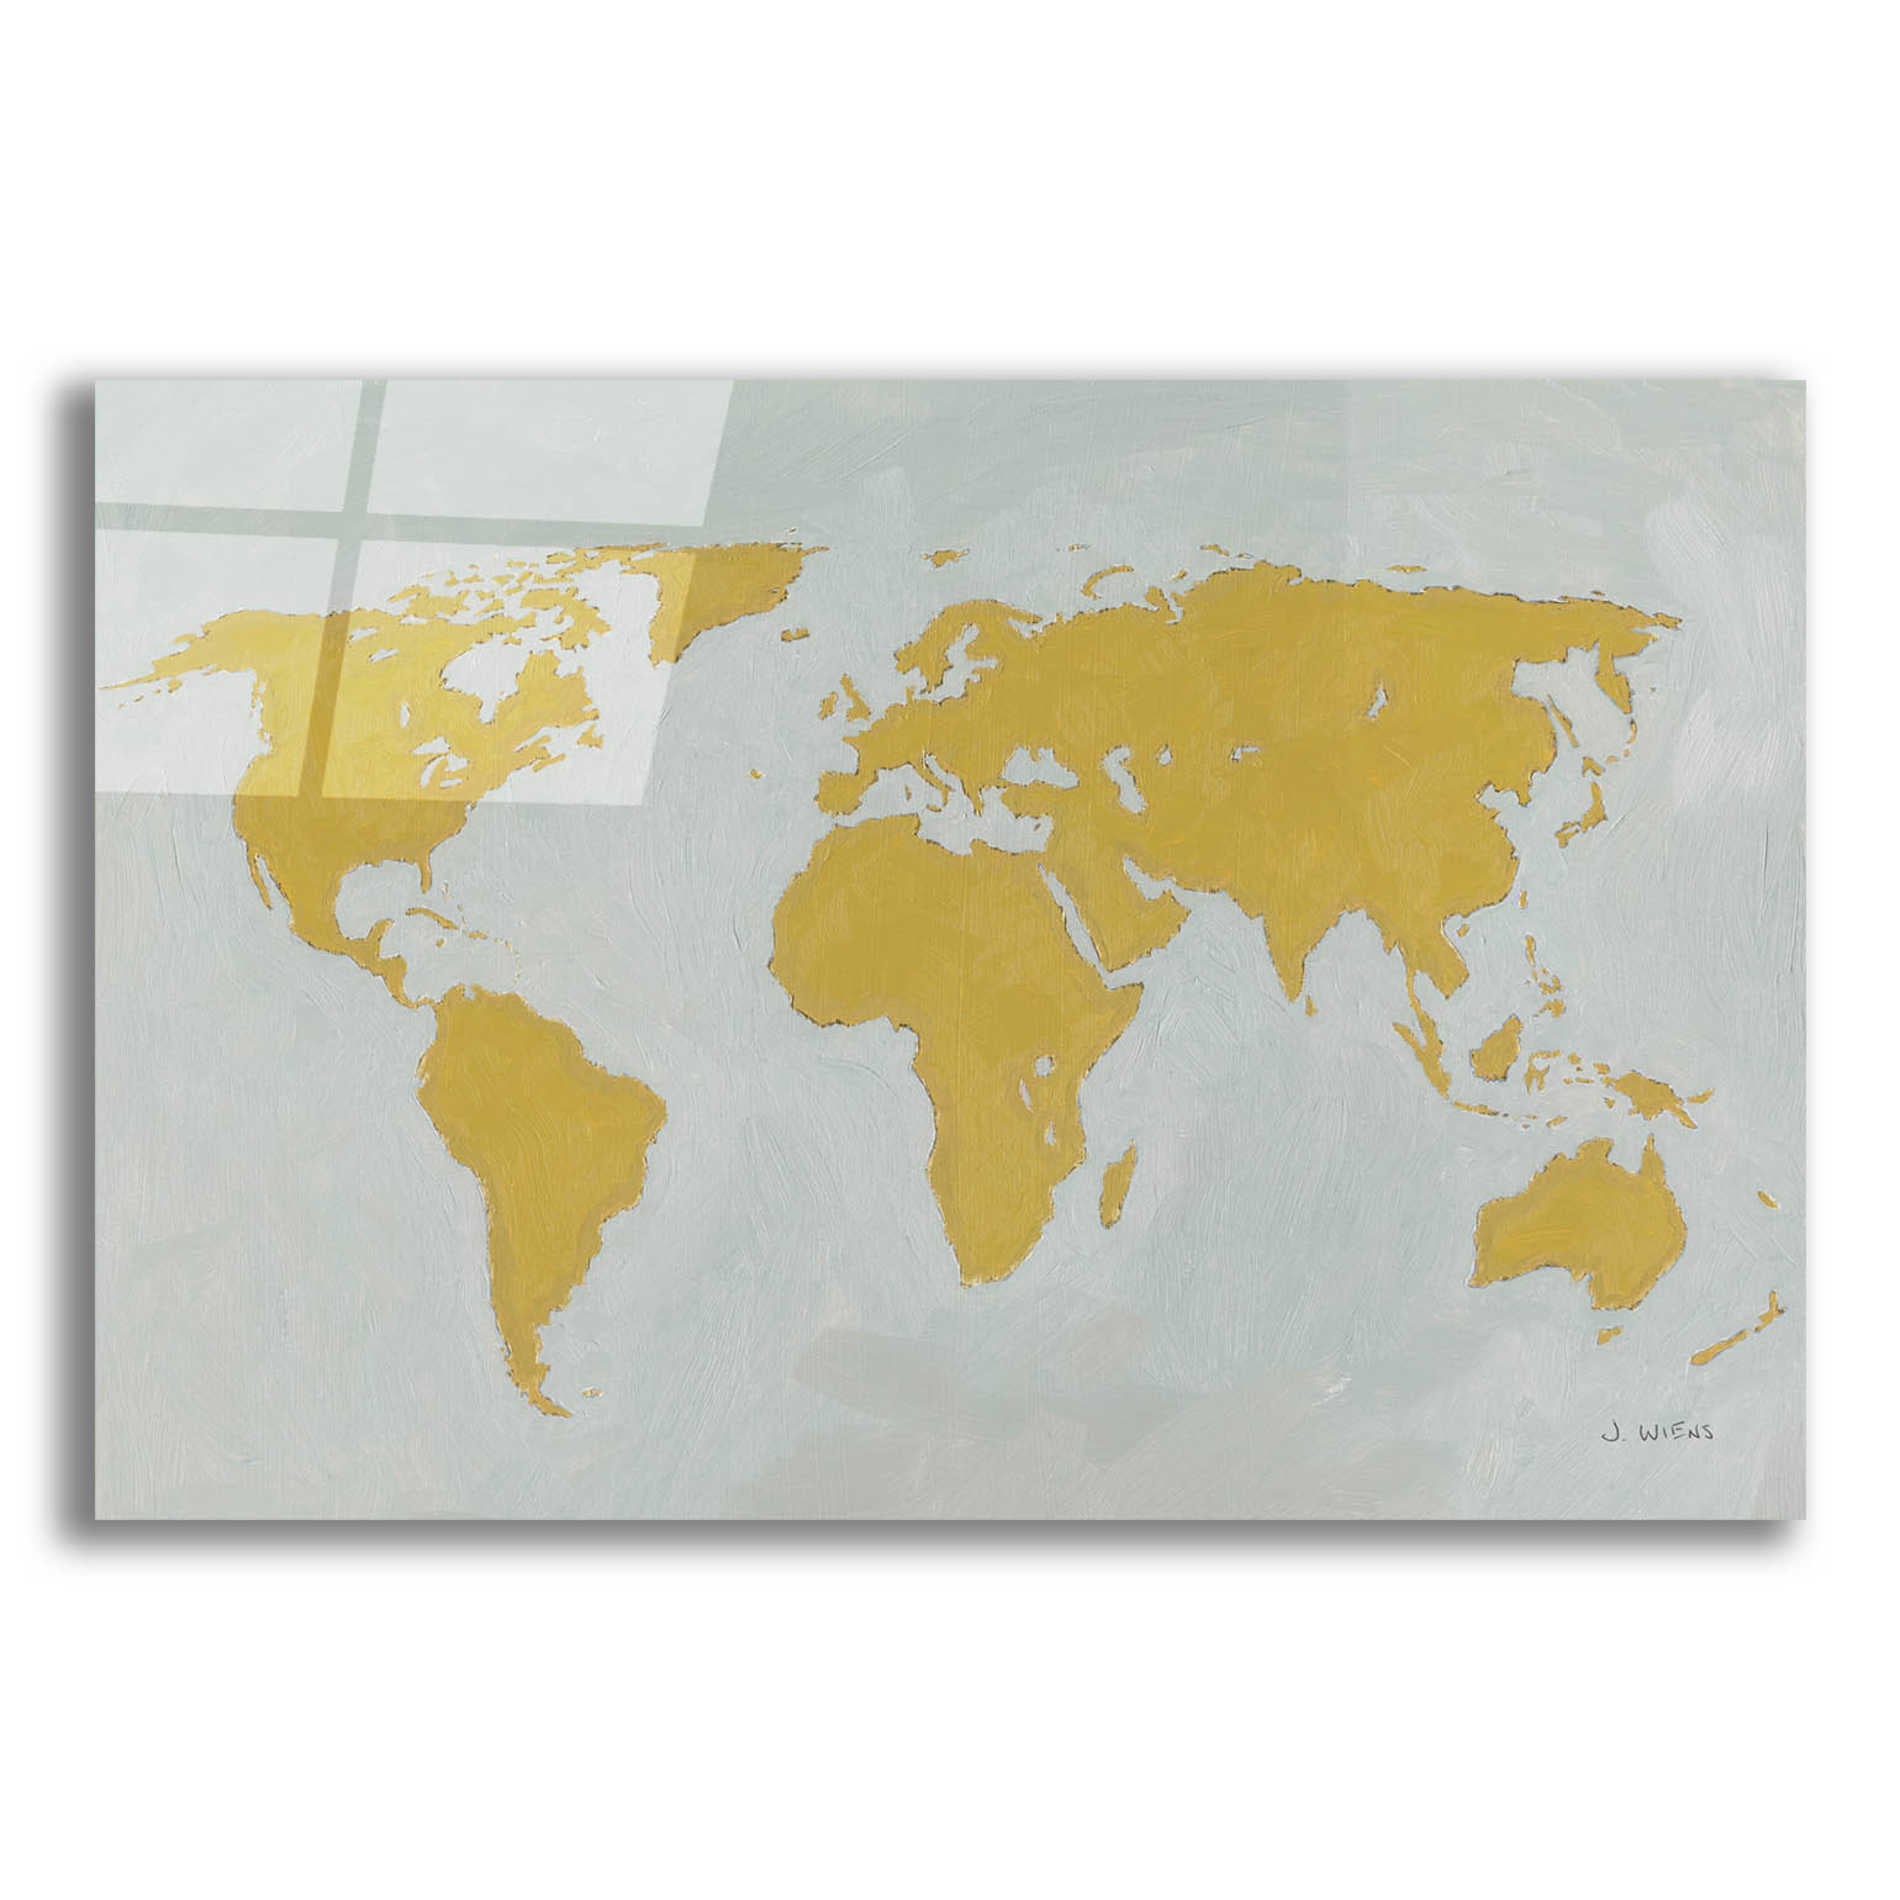 Epic Art 'Golden World' by James Wiens, Acrylic Glass Wall Art,24x16